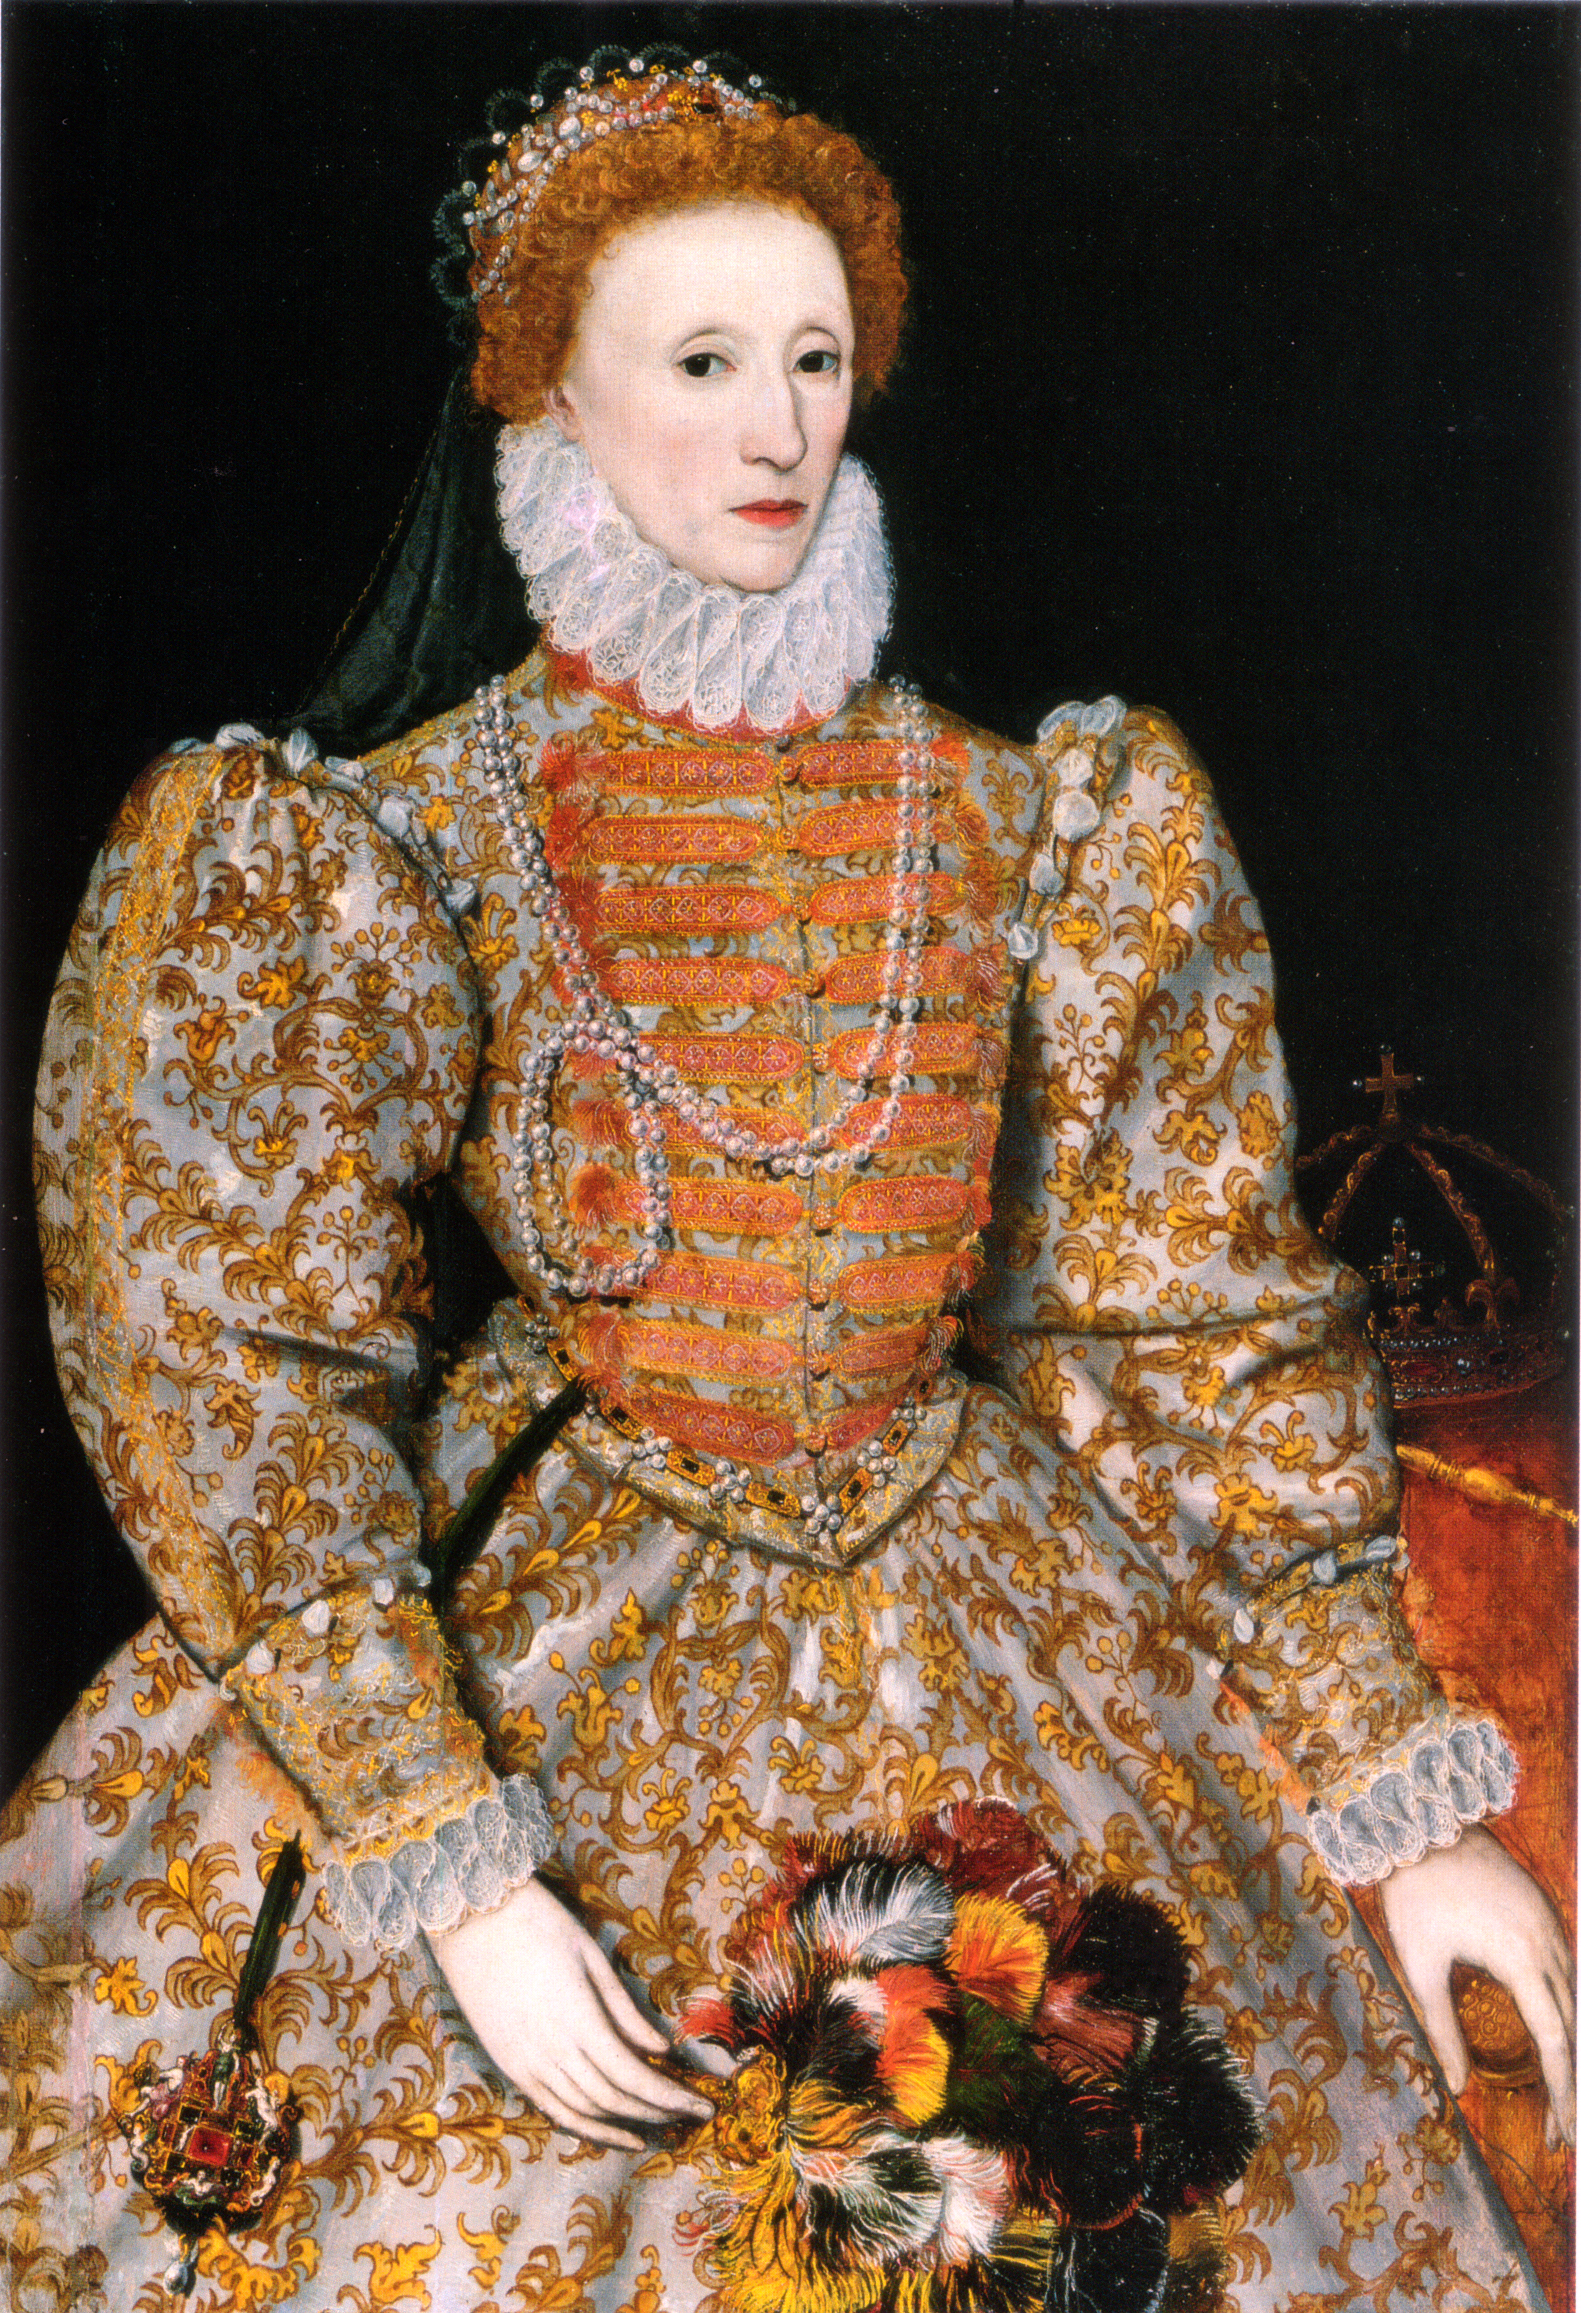 Alžběta I.  královna Anglie a Irska od 17. listopadu 1558 do března 1603.  Byla dcerou Jindřicha VIII. a jeho druhé ženy Anny Boleynové byla pátou a poslední panovnicí z rodu Tudorovců. Krefdit: National Portrait Gallery, London, volné dílo.